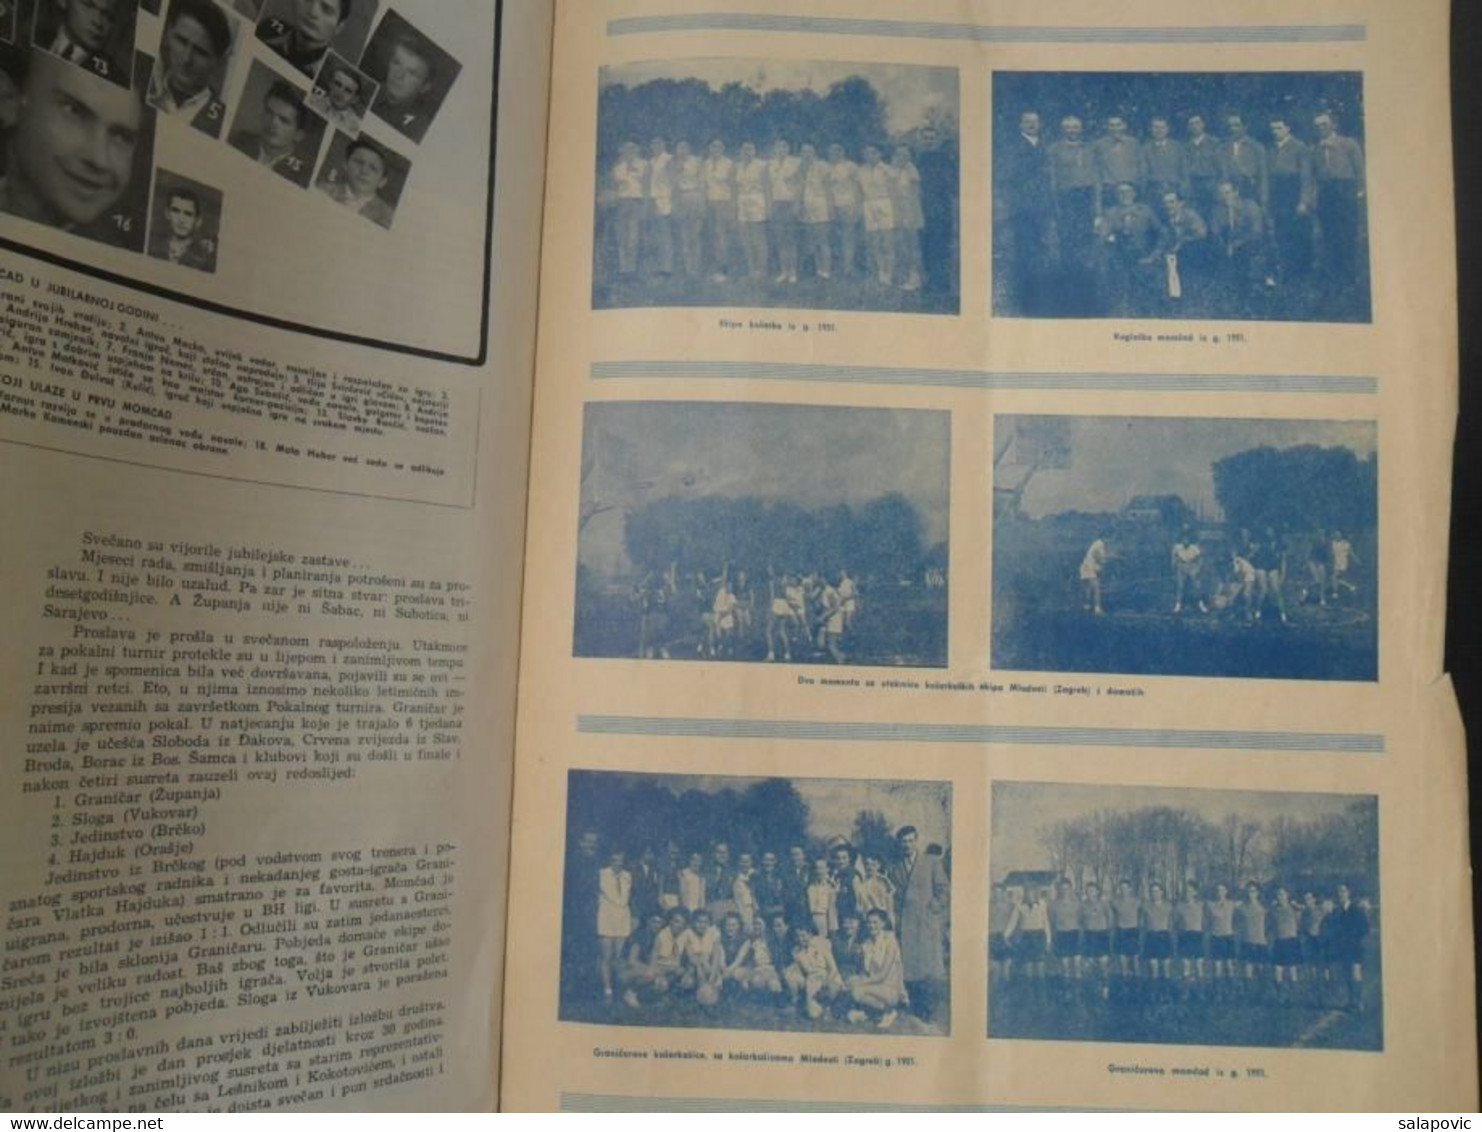 30 GODINA SPORTSKOG DRUSTVA GRANICAR ZUPANJA Monografija Football Club Croatia, Monograph - Livres